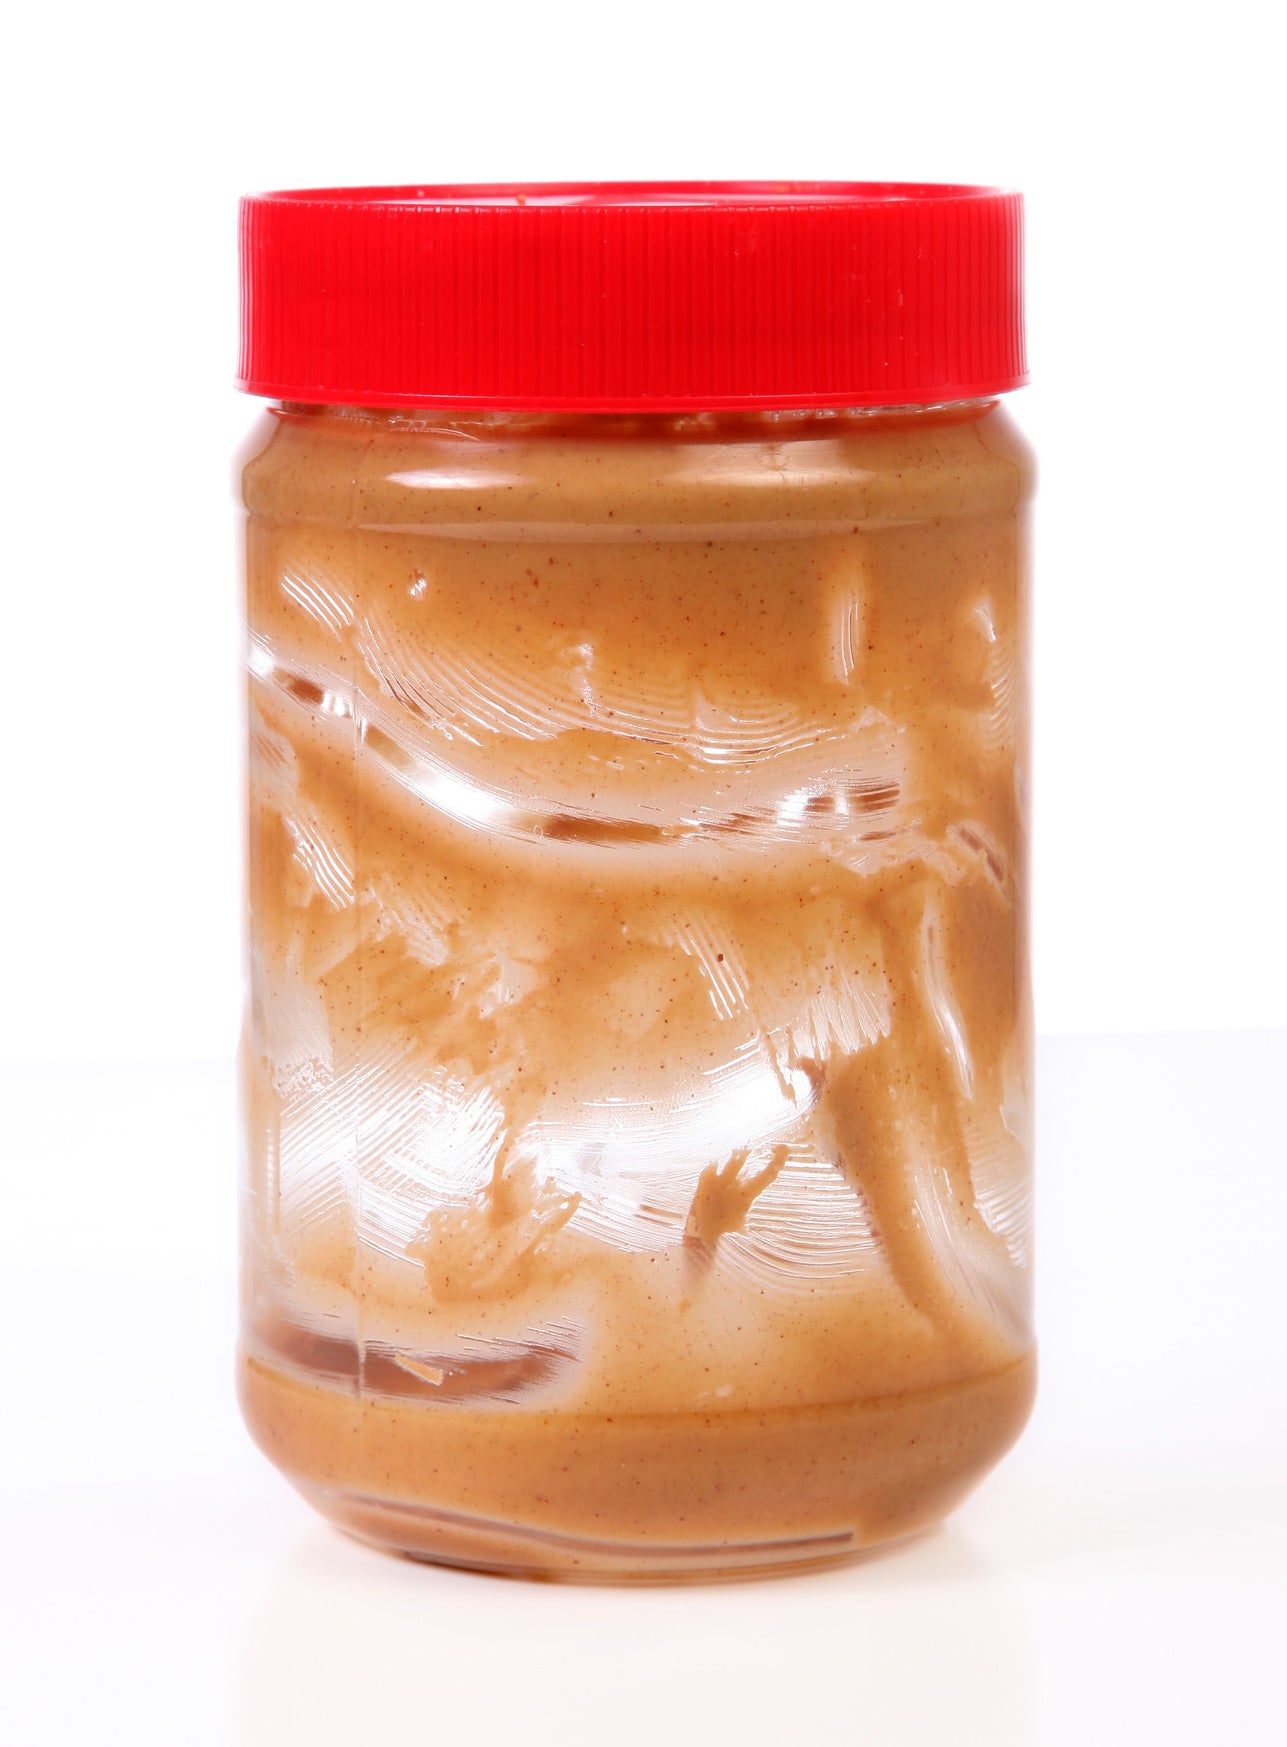 An empty peanut butter jar.